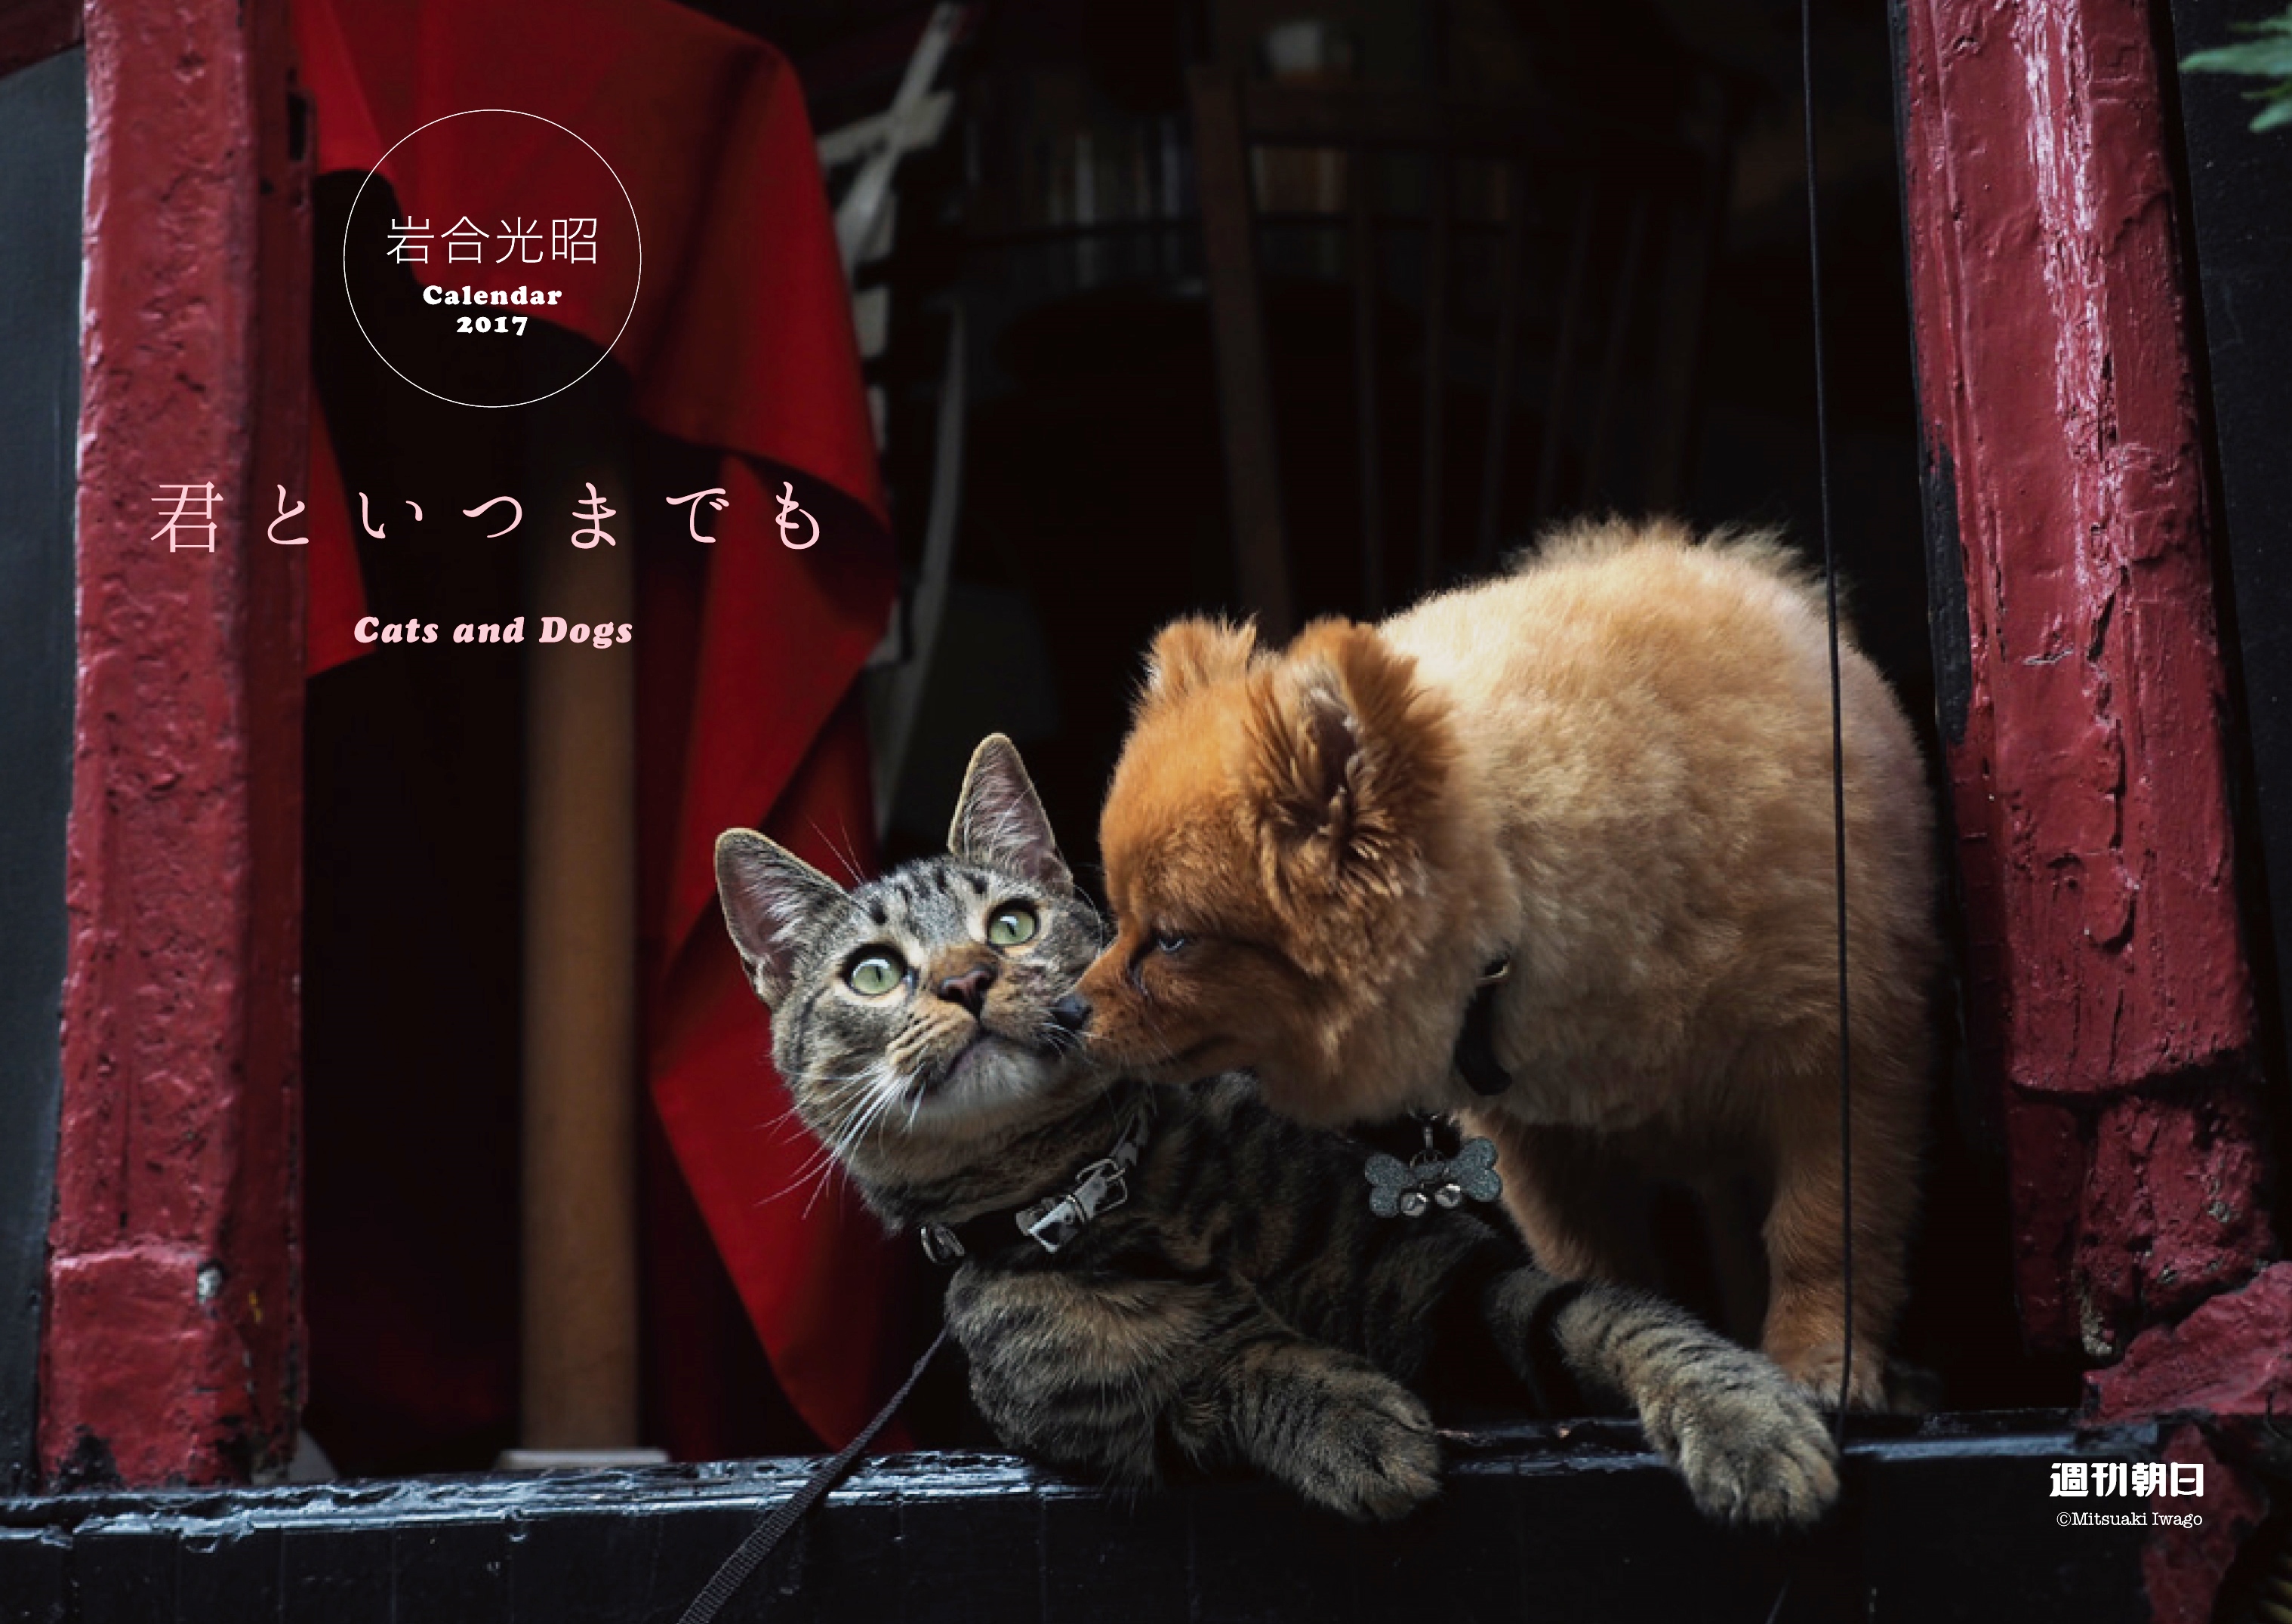 岩合光昭さん撮影の犬 猫カレンダーが 週刊朝日 に特別綴じ込み 株式会社朝日新聞出版のプレスリリース